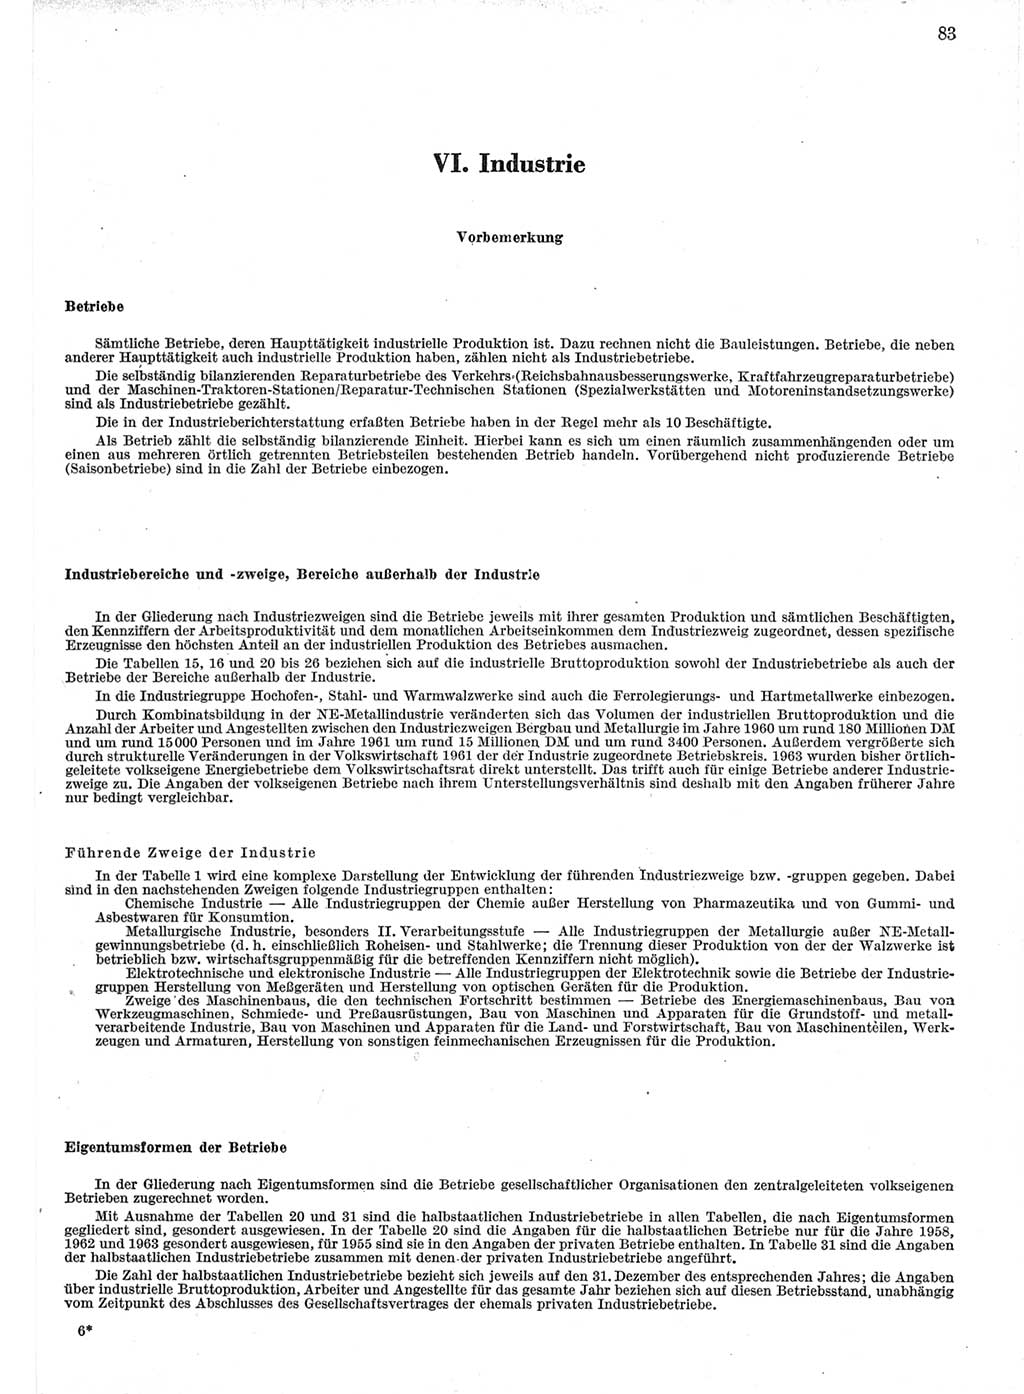 Statistisches Jahrbuch der Deutschen Demokratischen Republik (DDR) 1964, Seite 83 (Stat. Jb. DDR 1964, S. 83)